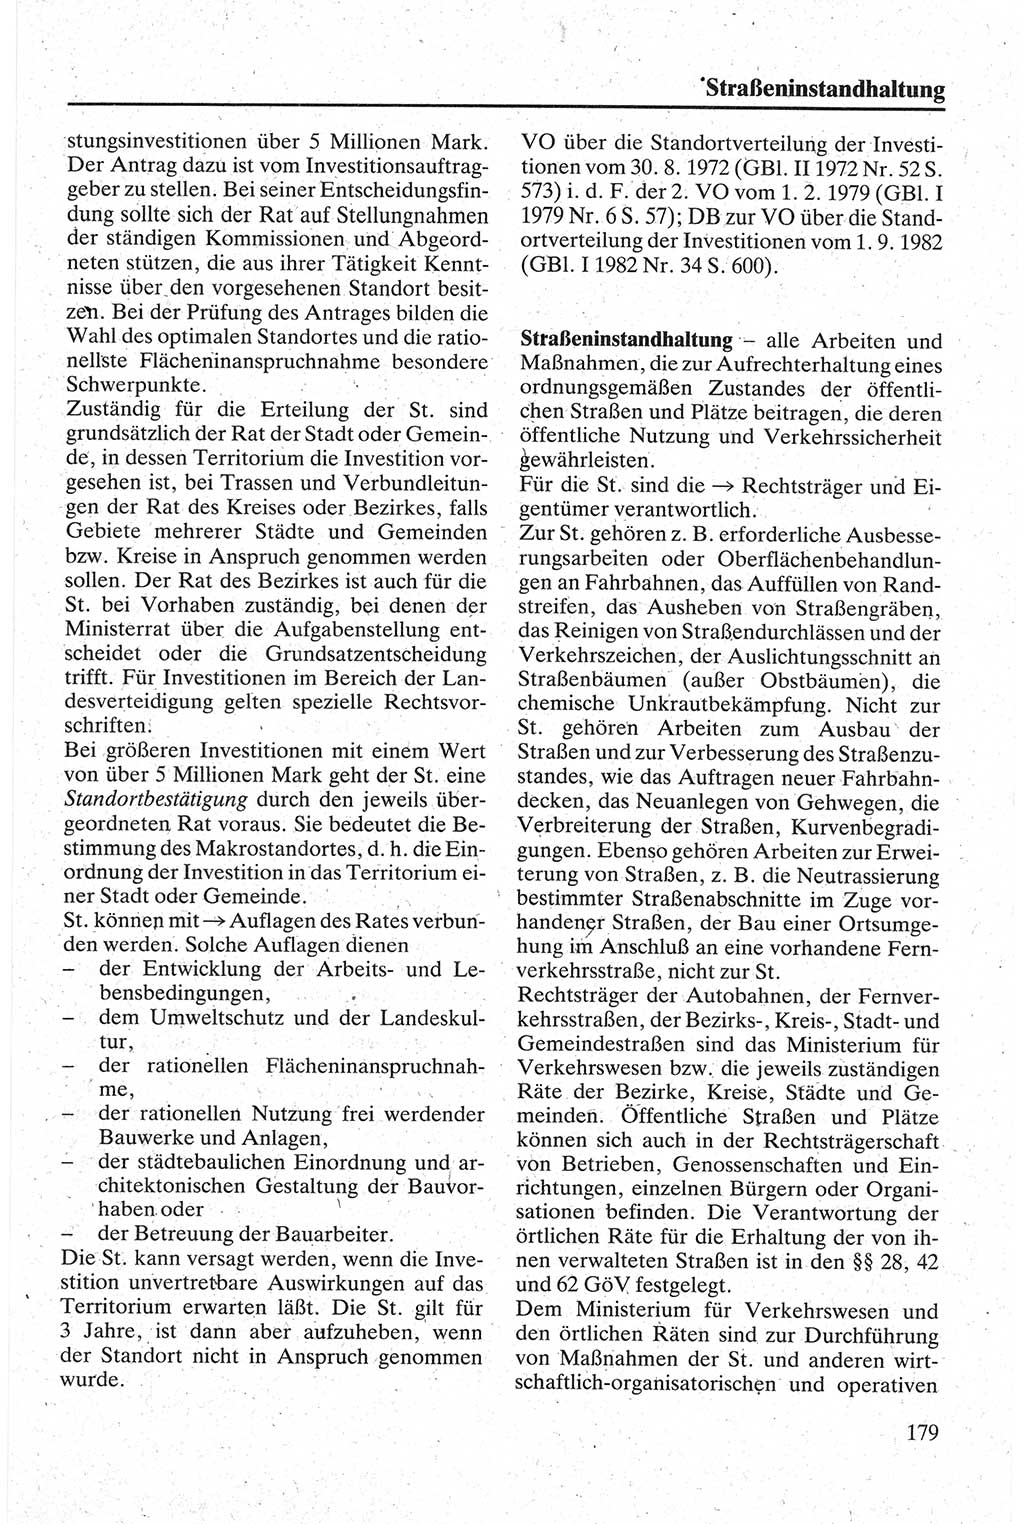 Handbuch für den Abgeordneten [Deutsche Demokratische Republik (DDR)] 1984, Seite 179 (Hb. Abg. DDR 1984, S. 179)